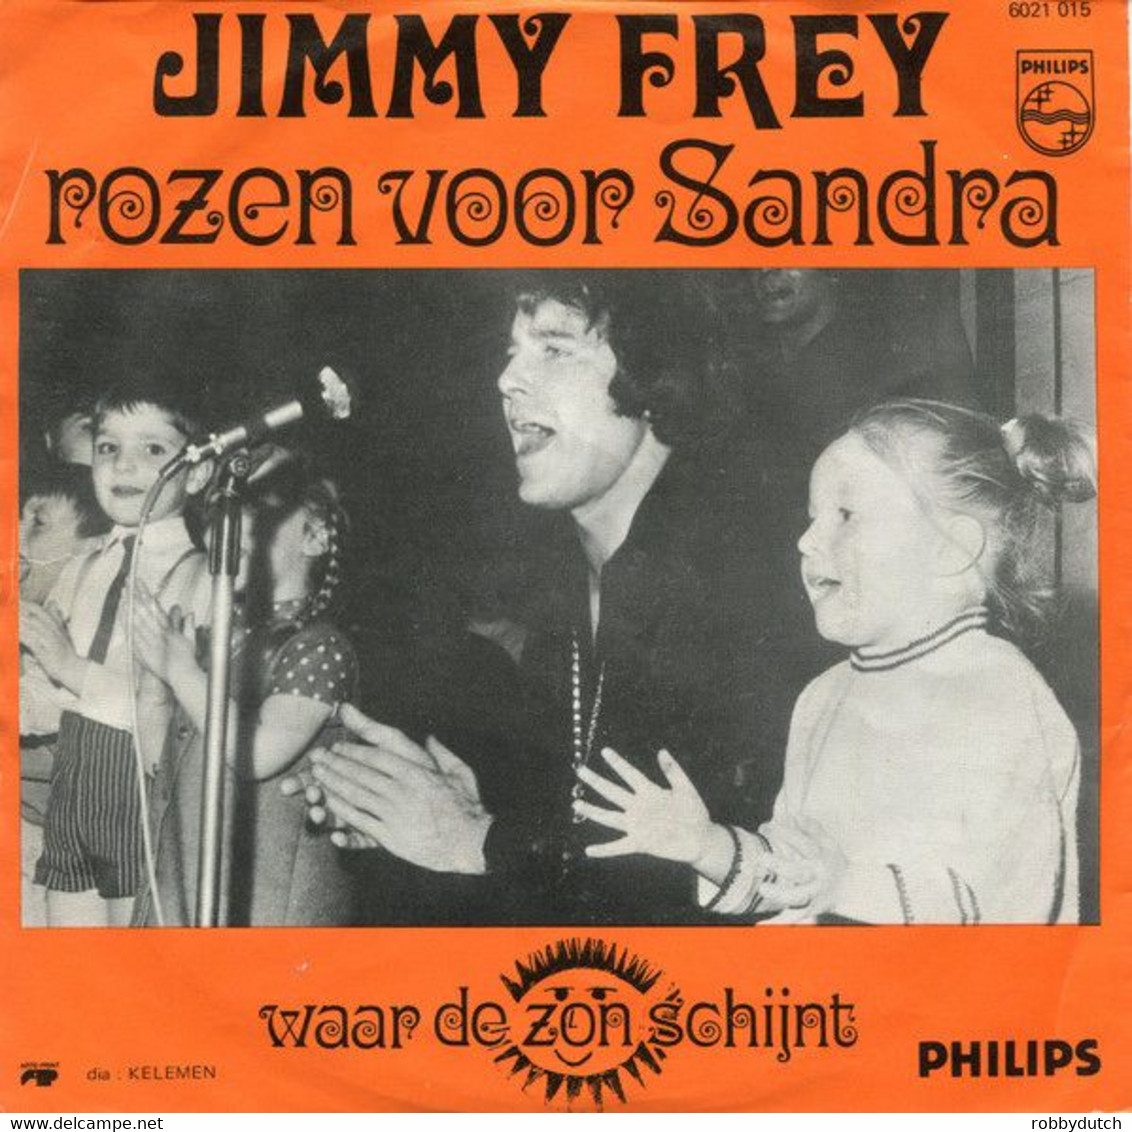 * 7" * JIMMY FREY - ROZEN VOOR SANDRA (België 1971 Ex-!!!) - Autres - Musique Néerlandaise